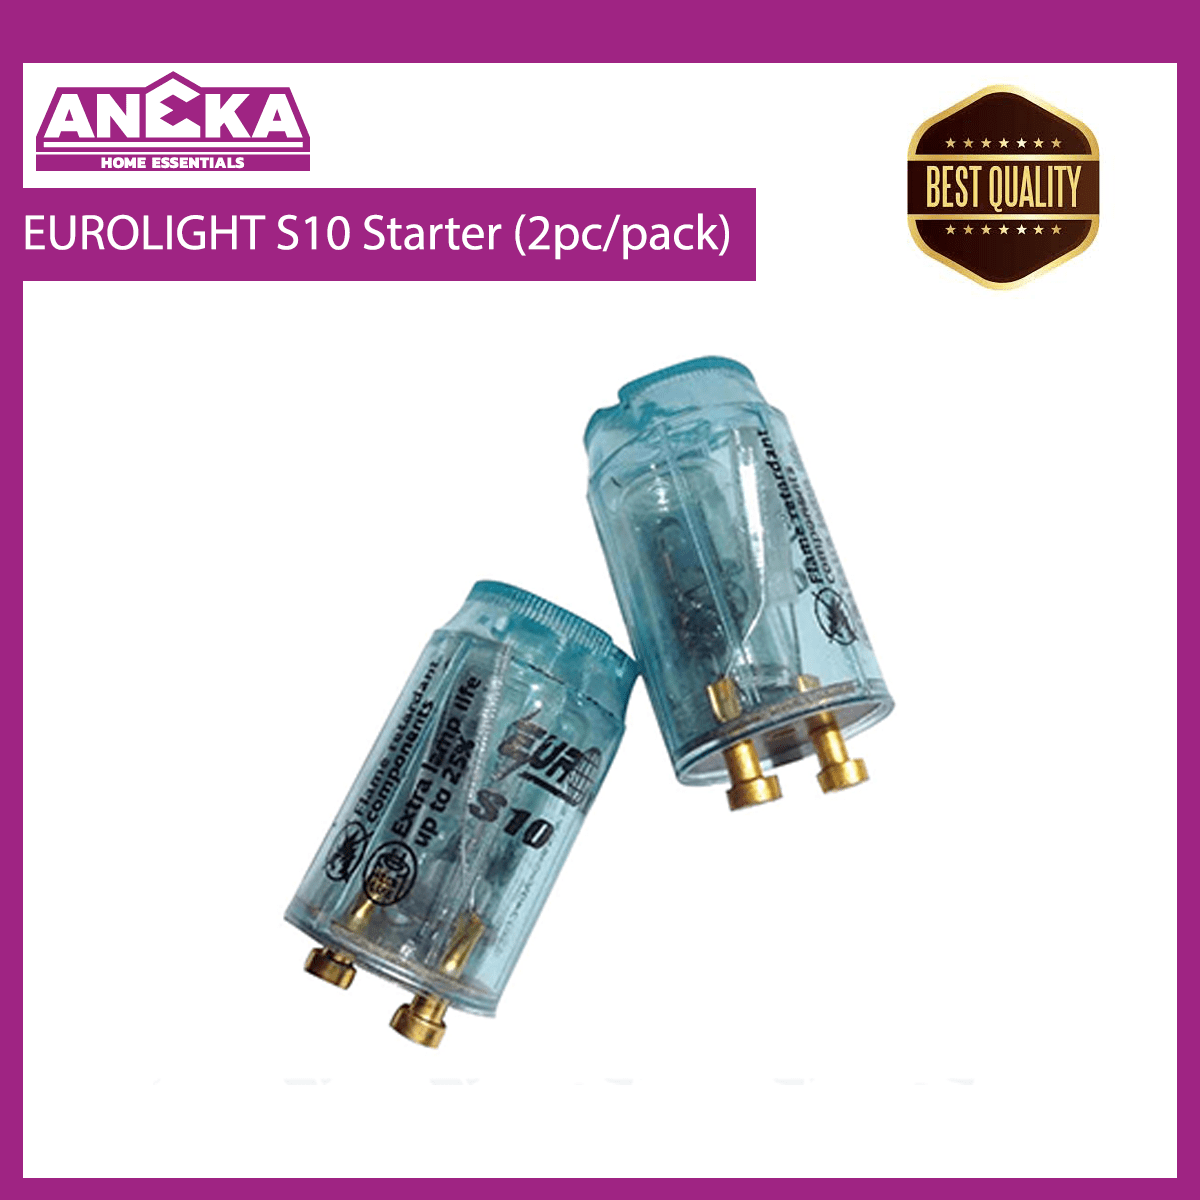 EUROLIGHT S10 Starter (2pcs/pack)